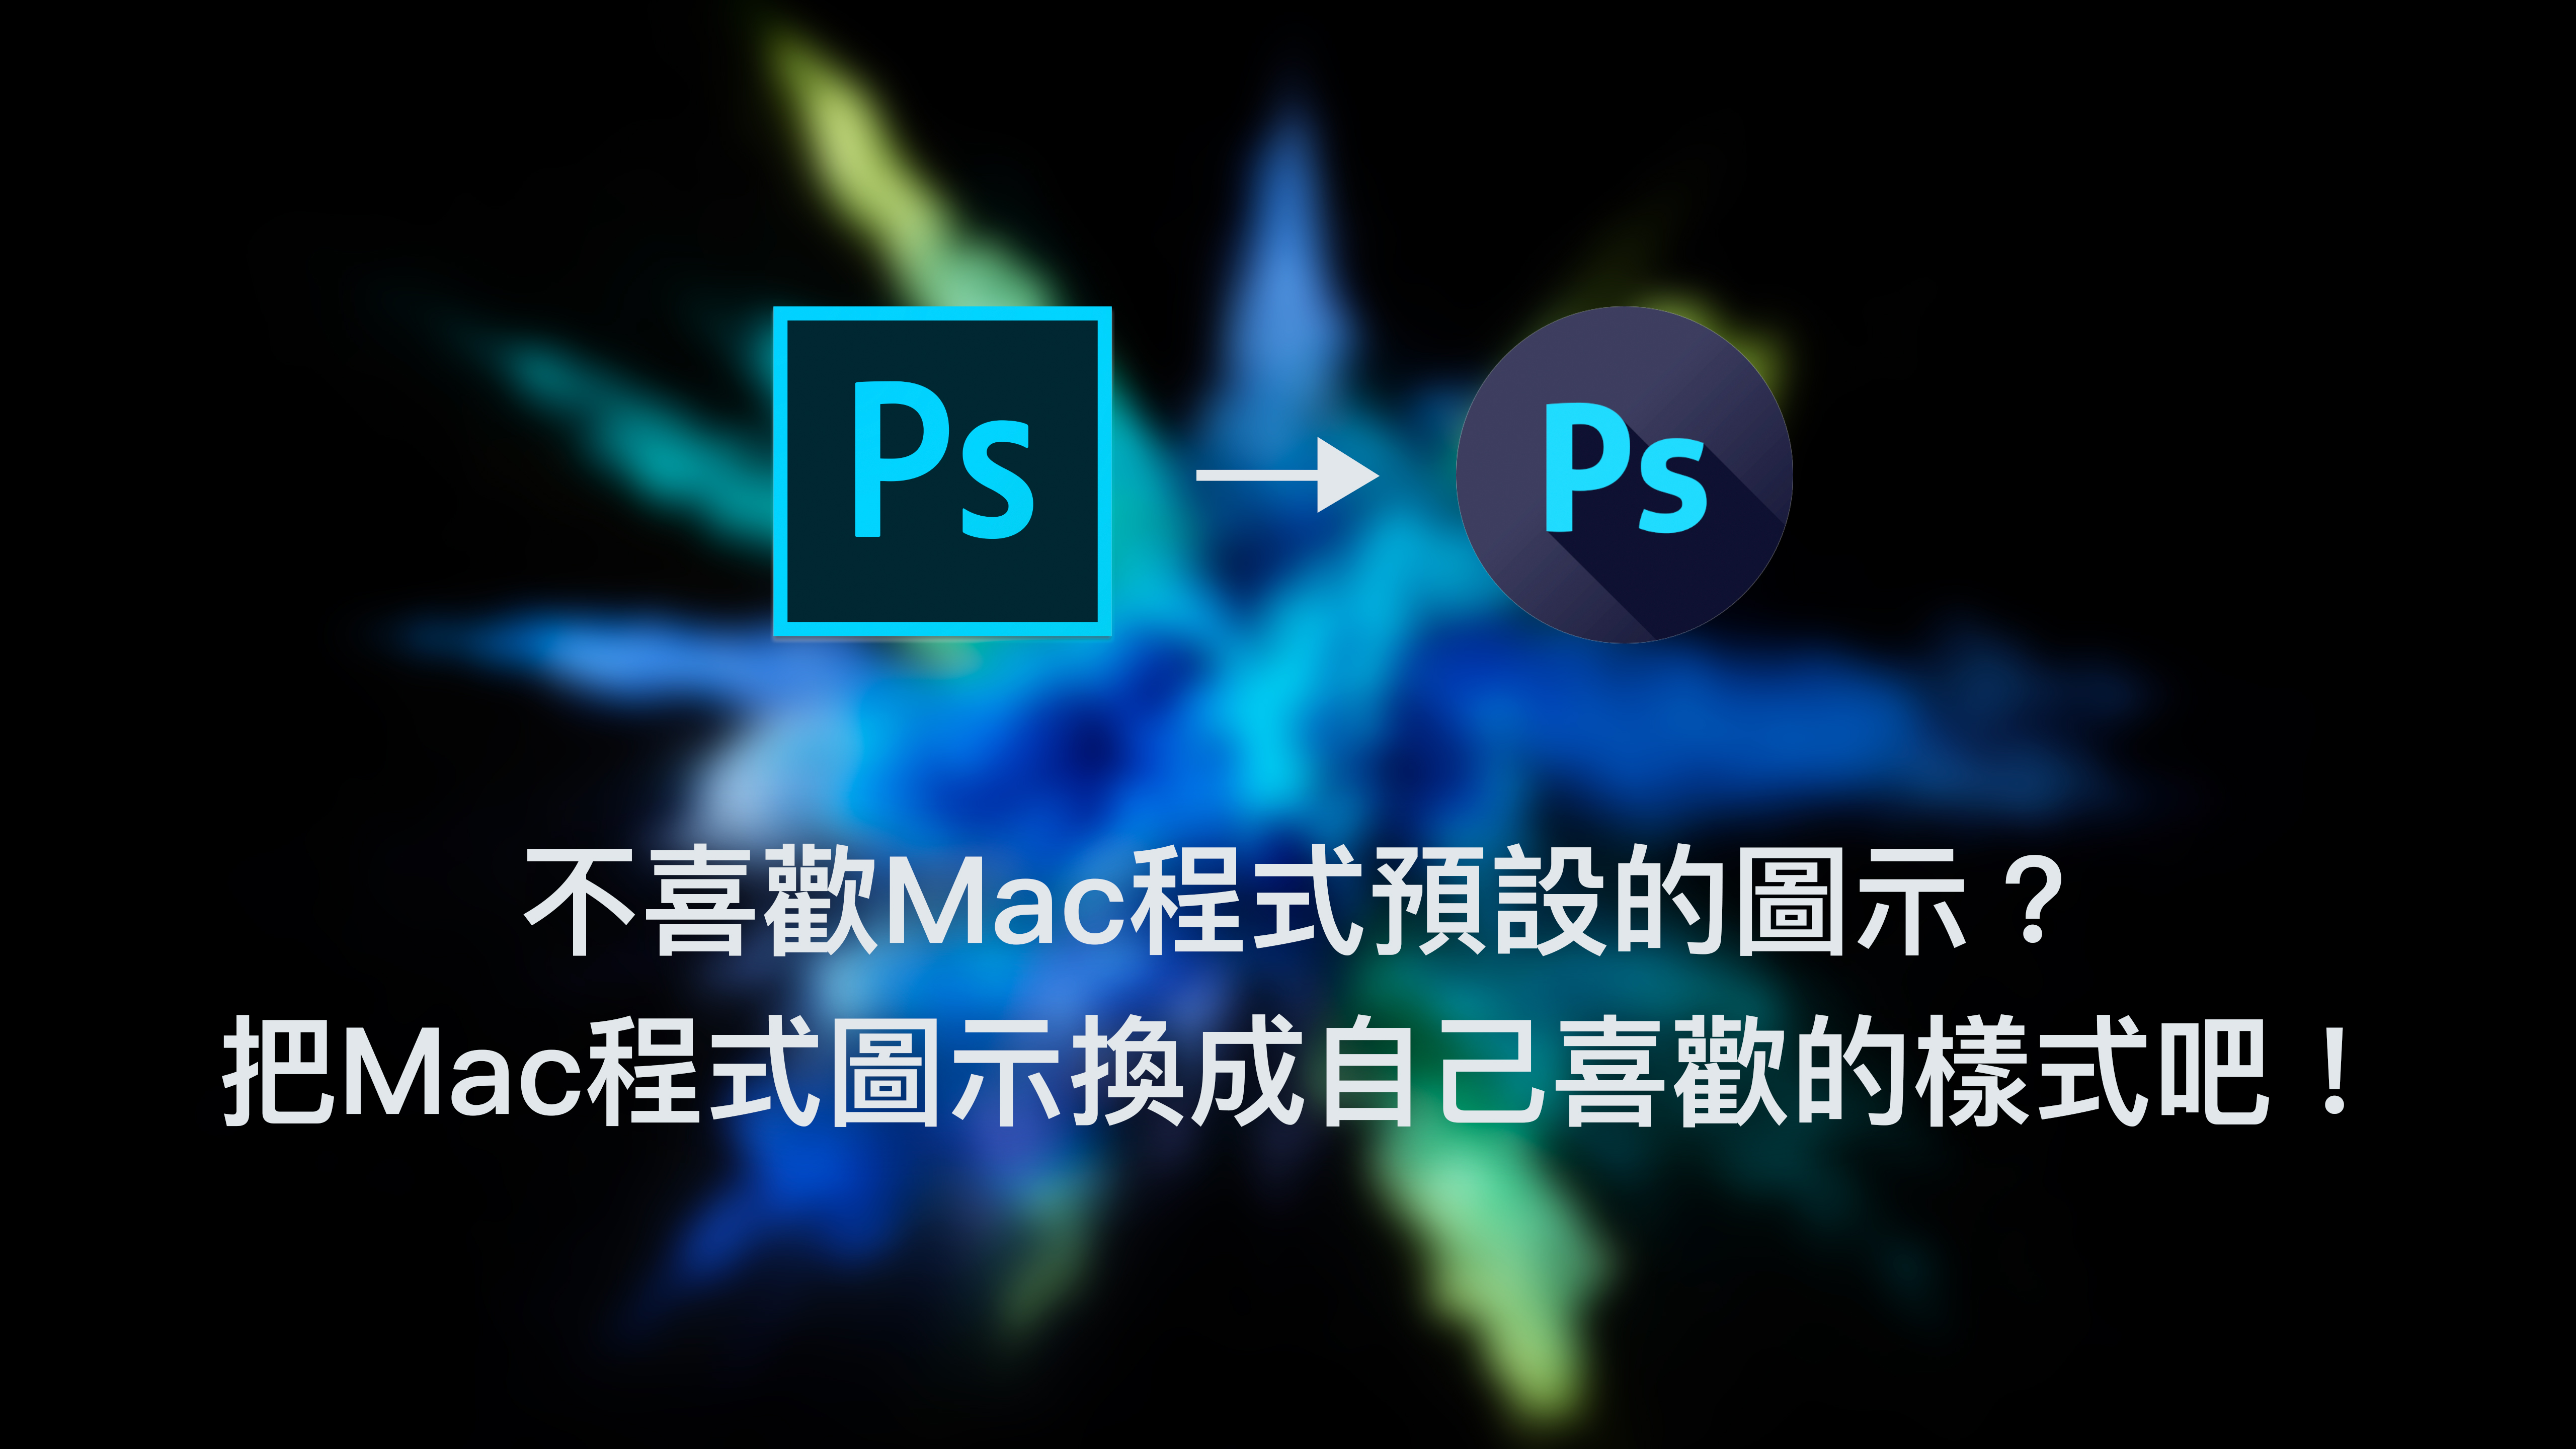 不喜歡Mac程式預設的圖示？把Mac程式圖示換成自己喜歡的樣式吧！